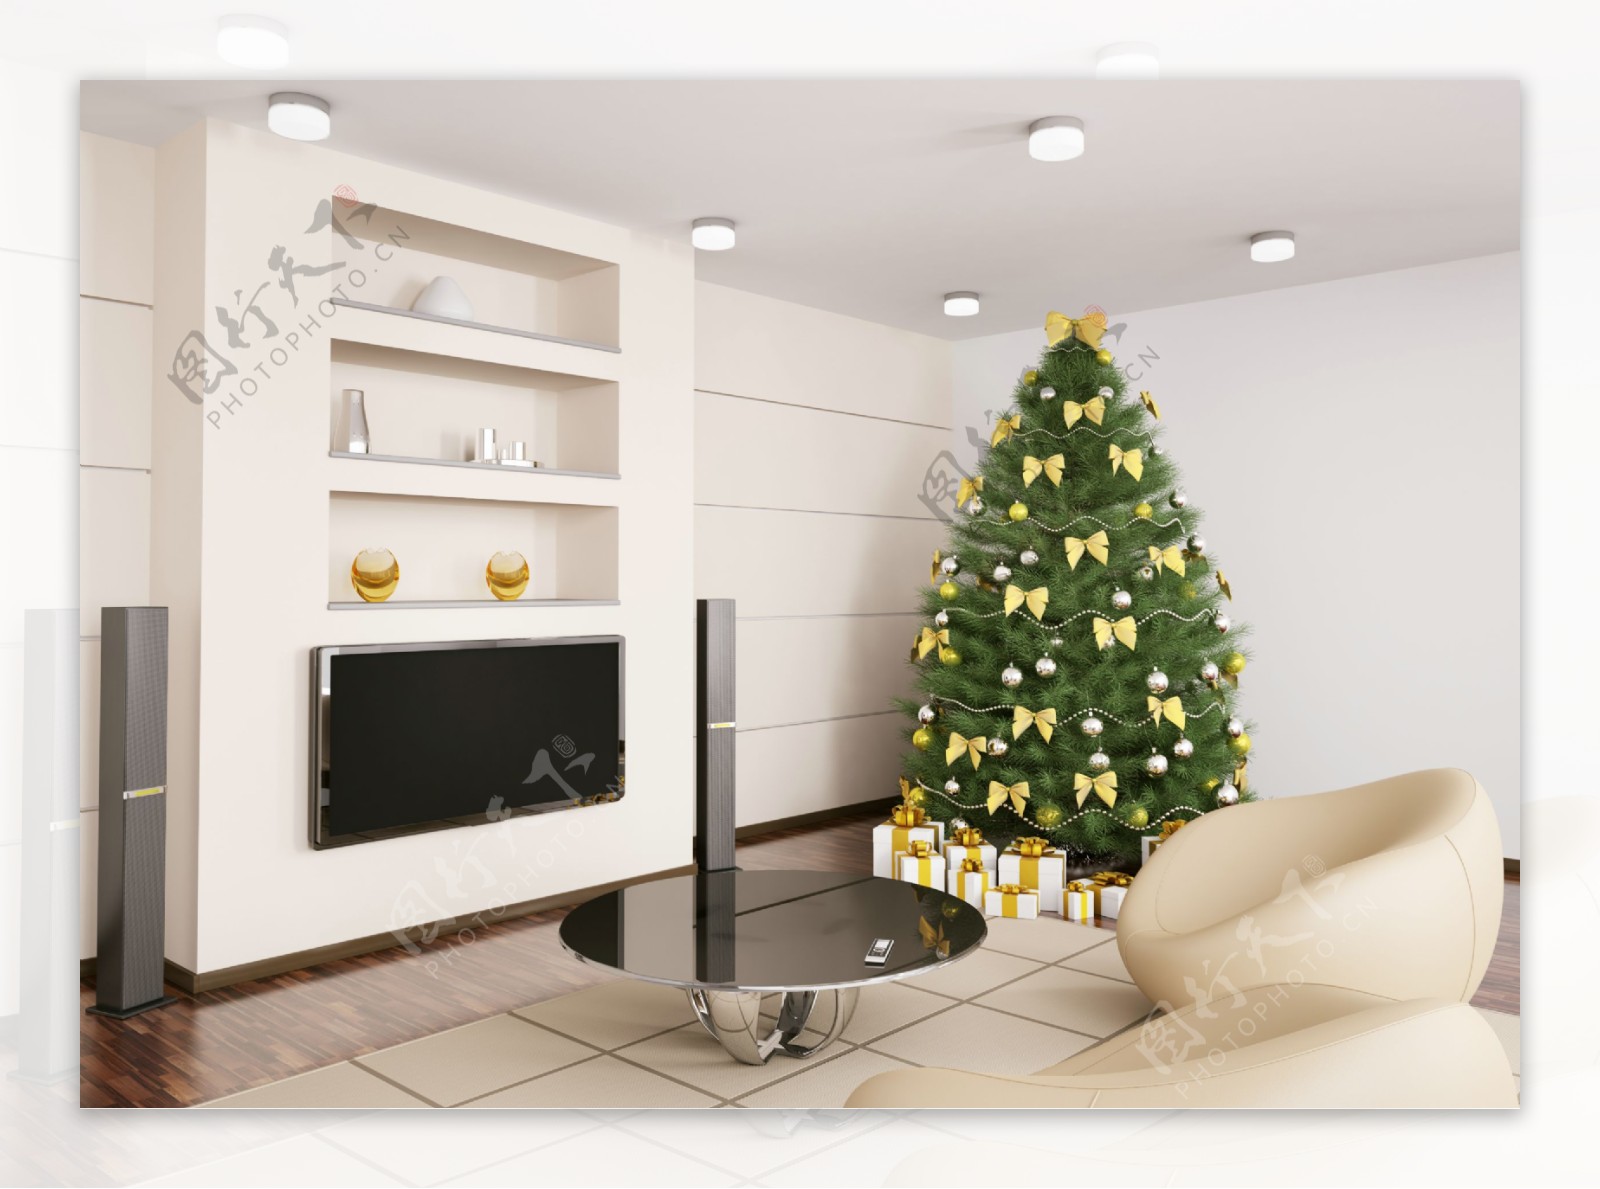 客厅和圣诞树图片